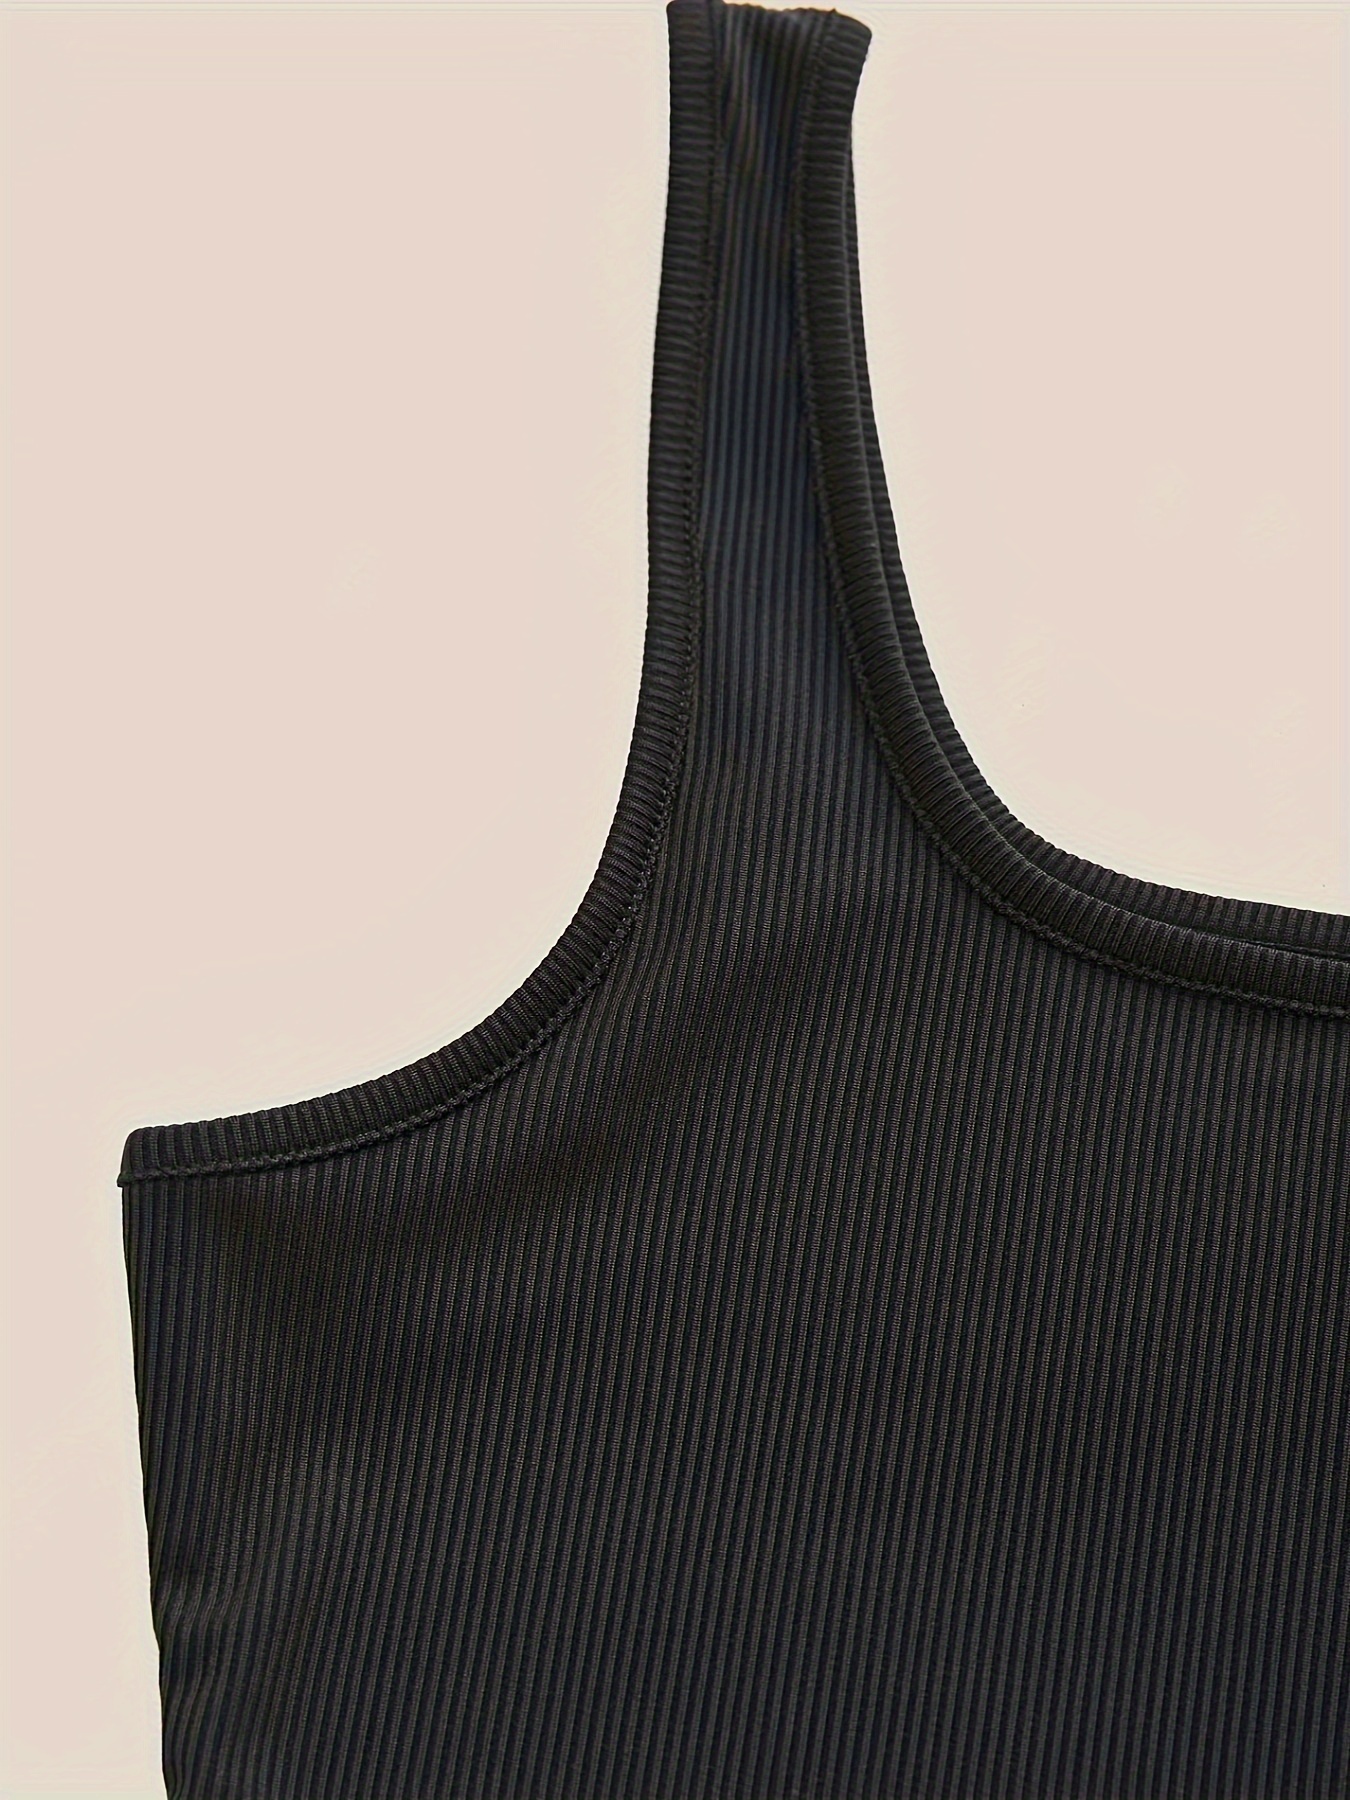 Women's Sleeveless Tank Top Bodysuit – Style By Jan